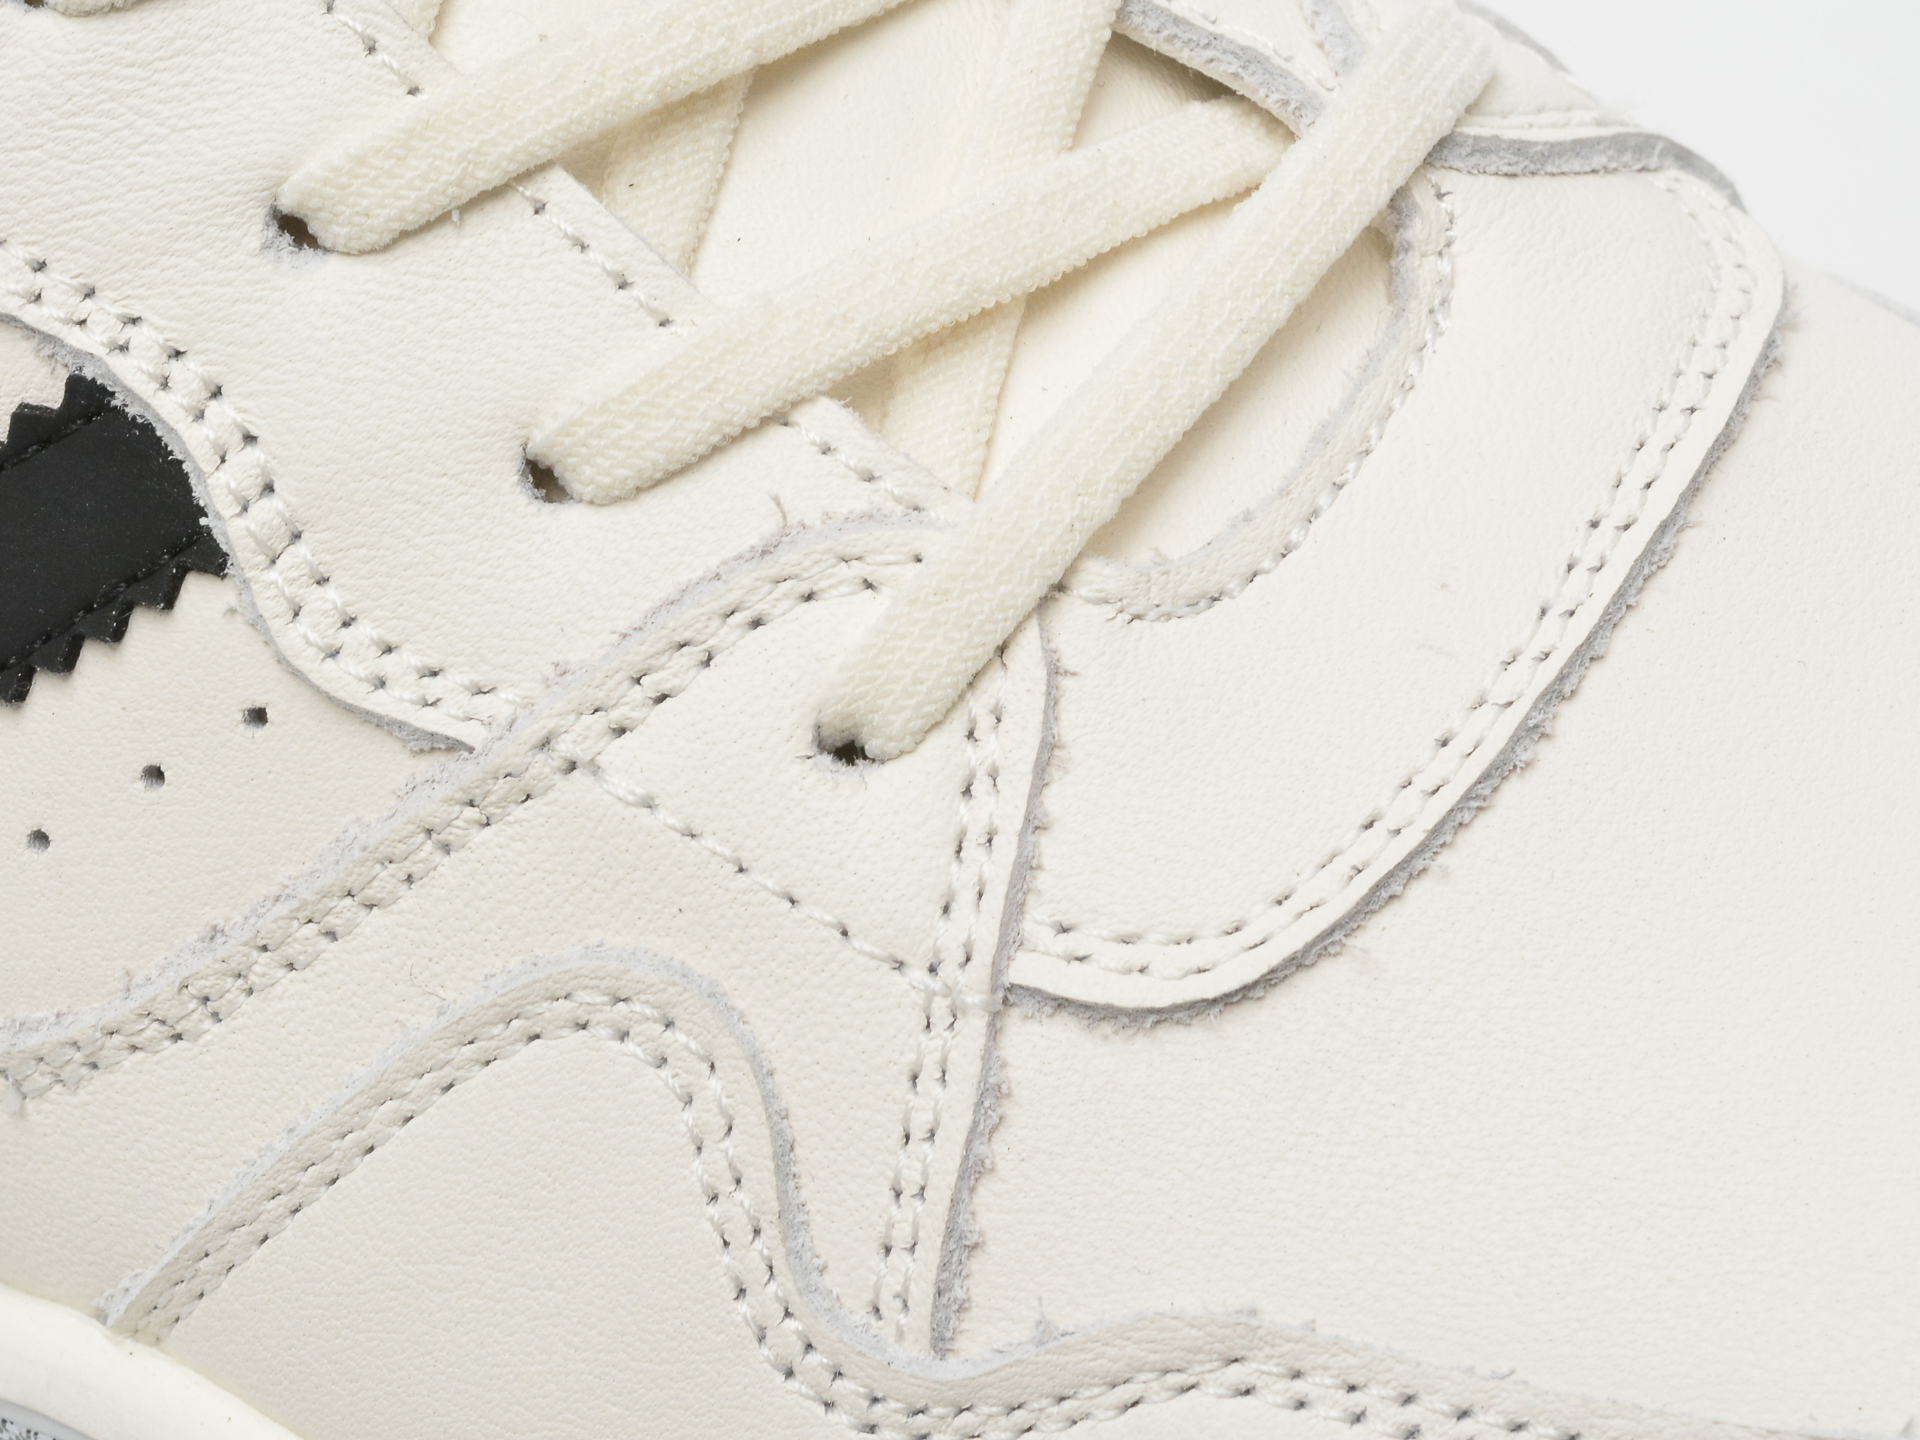 Poze Pantofi GRYXX albi, 53128, din piele naturala otter.ro